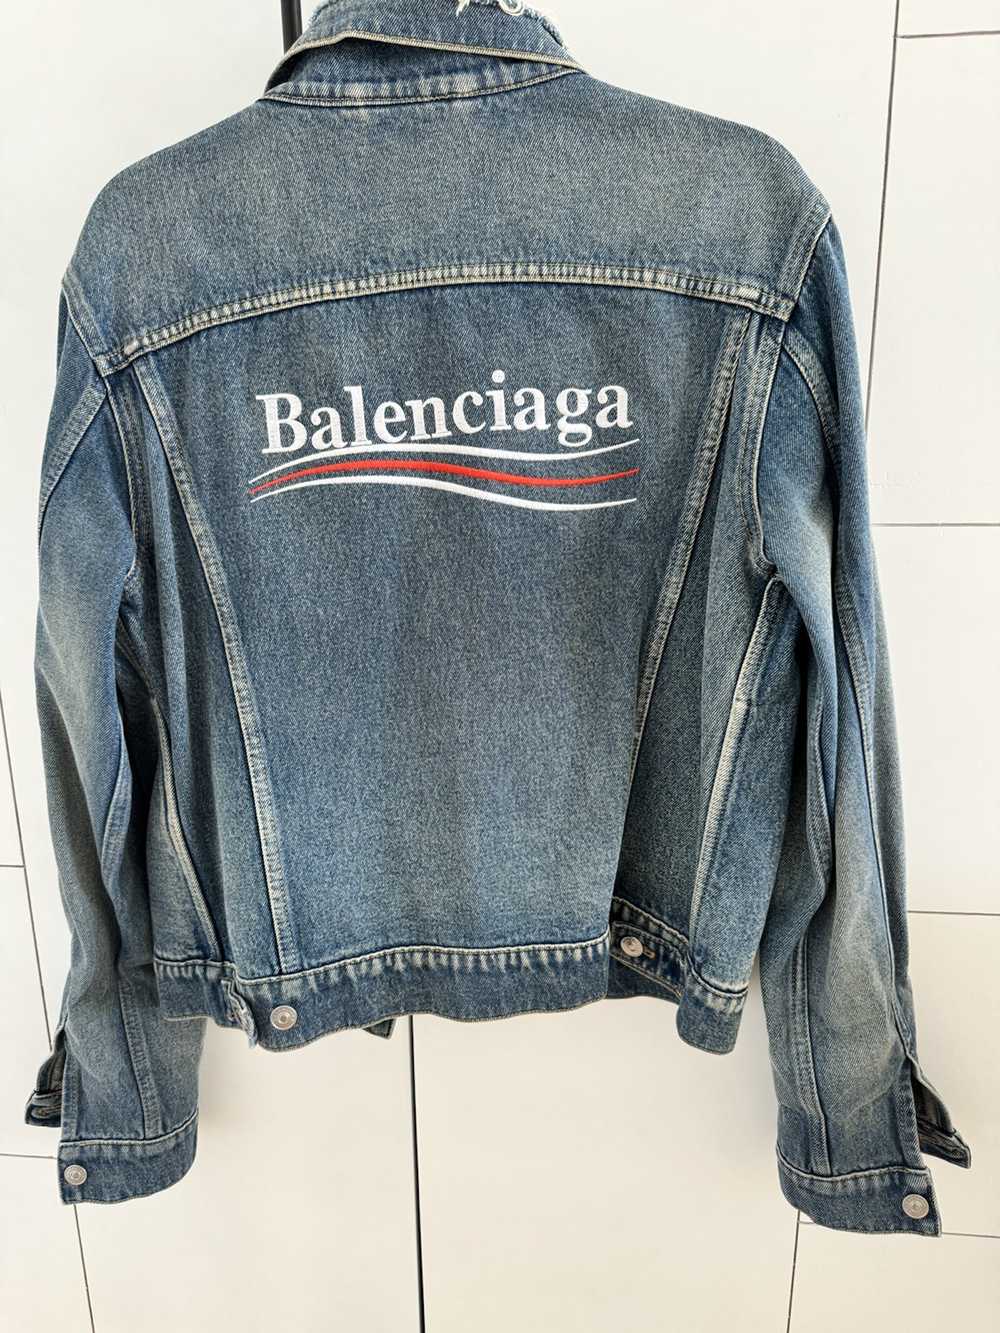 Balenciaga Balenciaga logo Denim Jacket - image 2